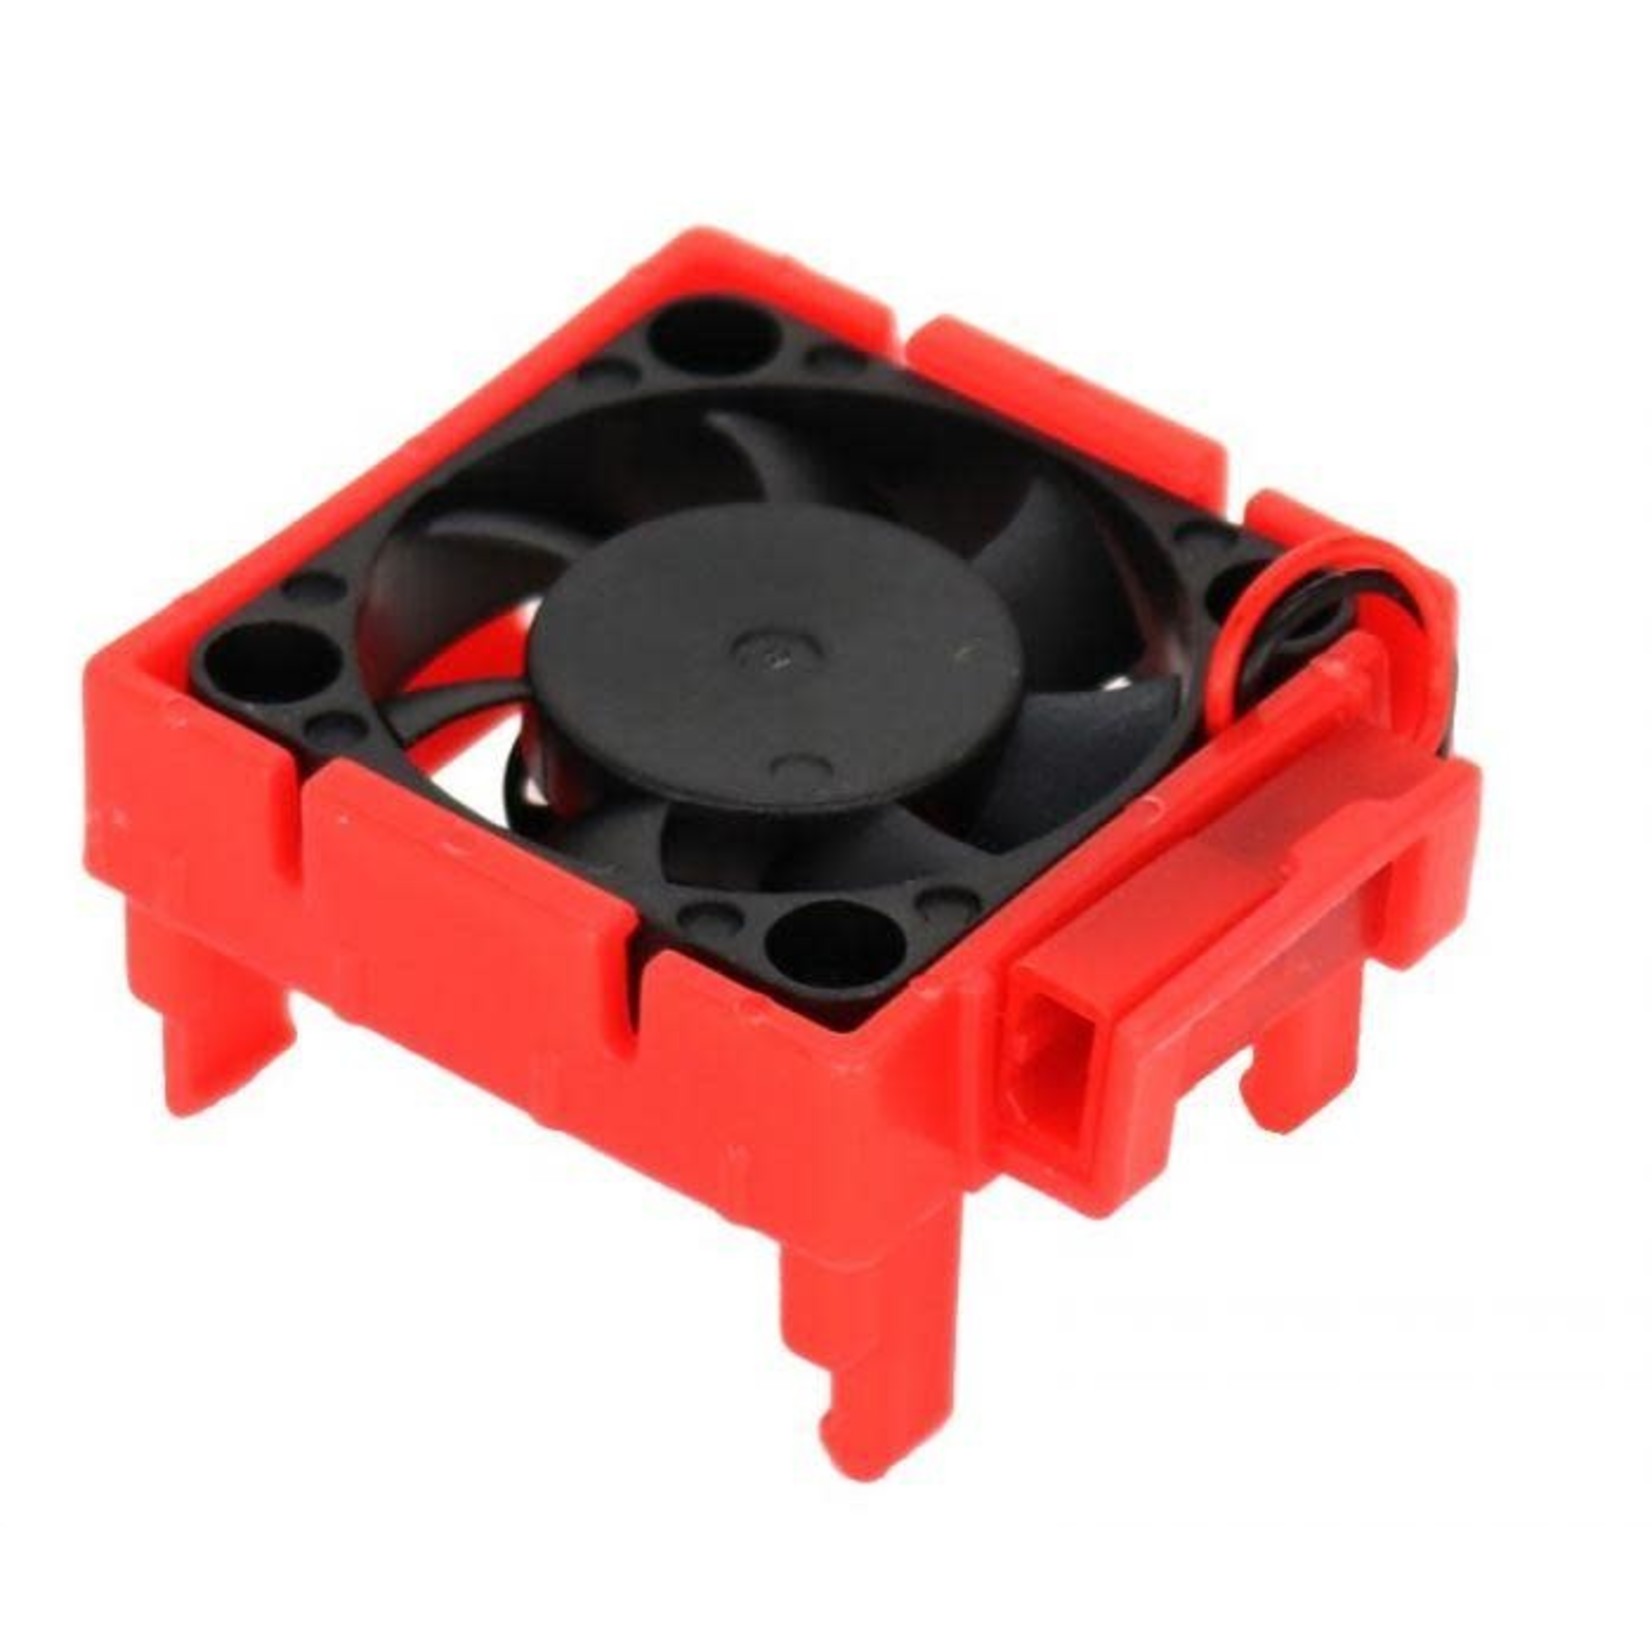 Power Hobby Power Hobby - Cooling Fan, for Traxxas Velineon VLX-3 ESC, Red #PH3000RED